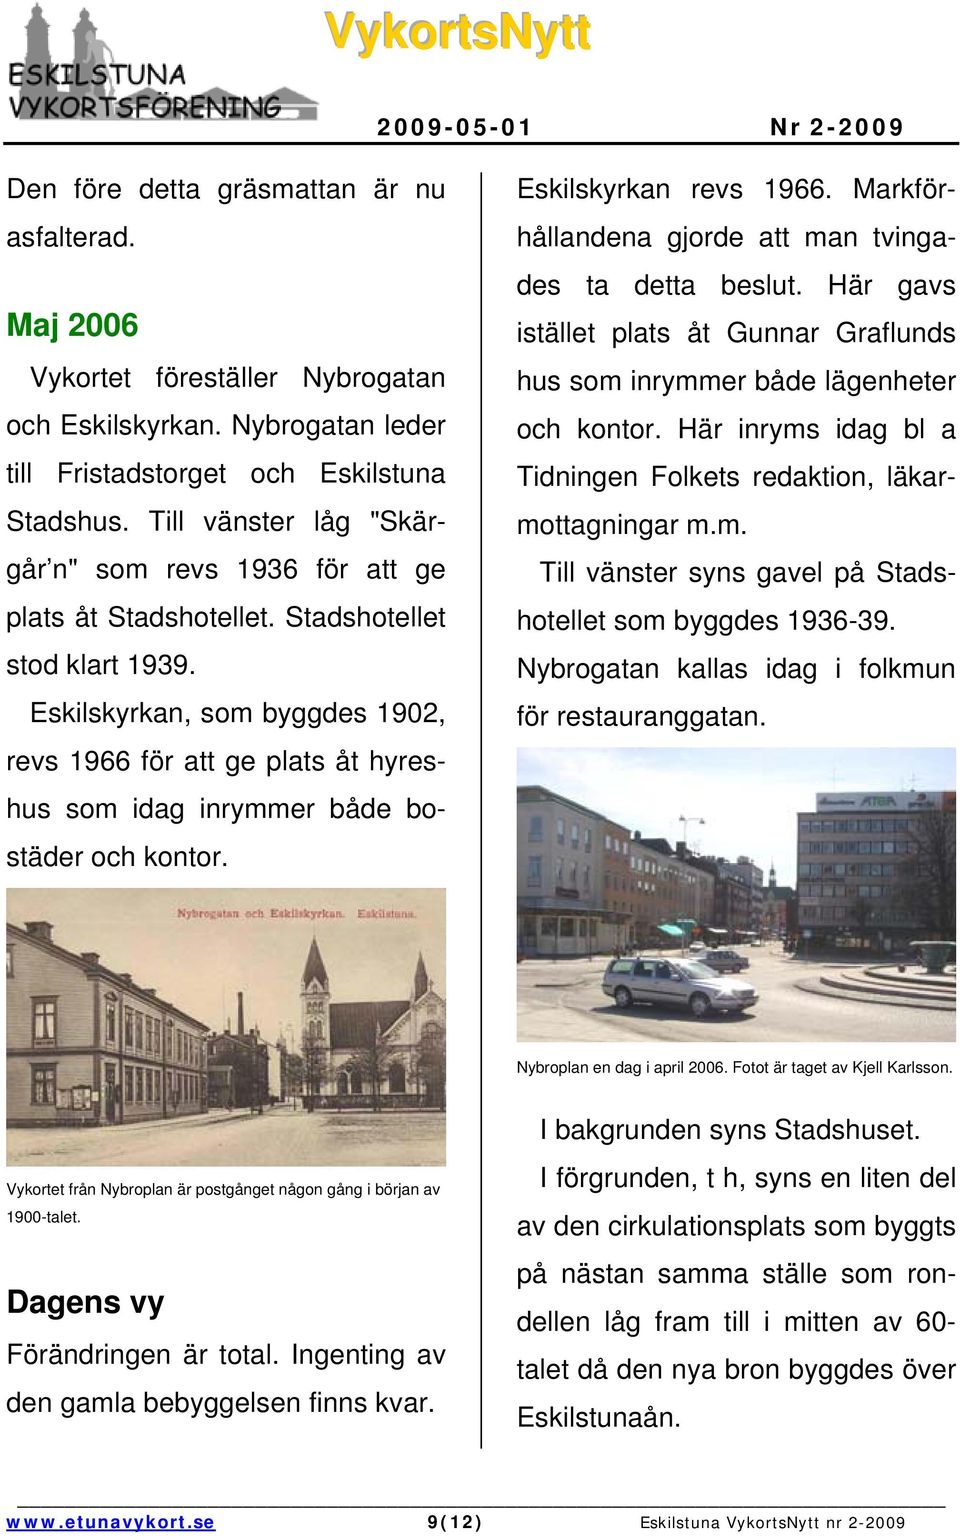 Eskilskyrkan, som byggdes 1902, revs 1966 för att ge plats åt hyreshus som idag inrymmer både bostäder och kontor. Eskilskyrkan revs 1966. Markförhållandena gjorde att man tvingades ta detta beslut.